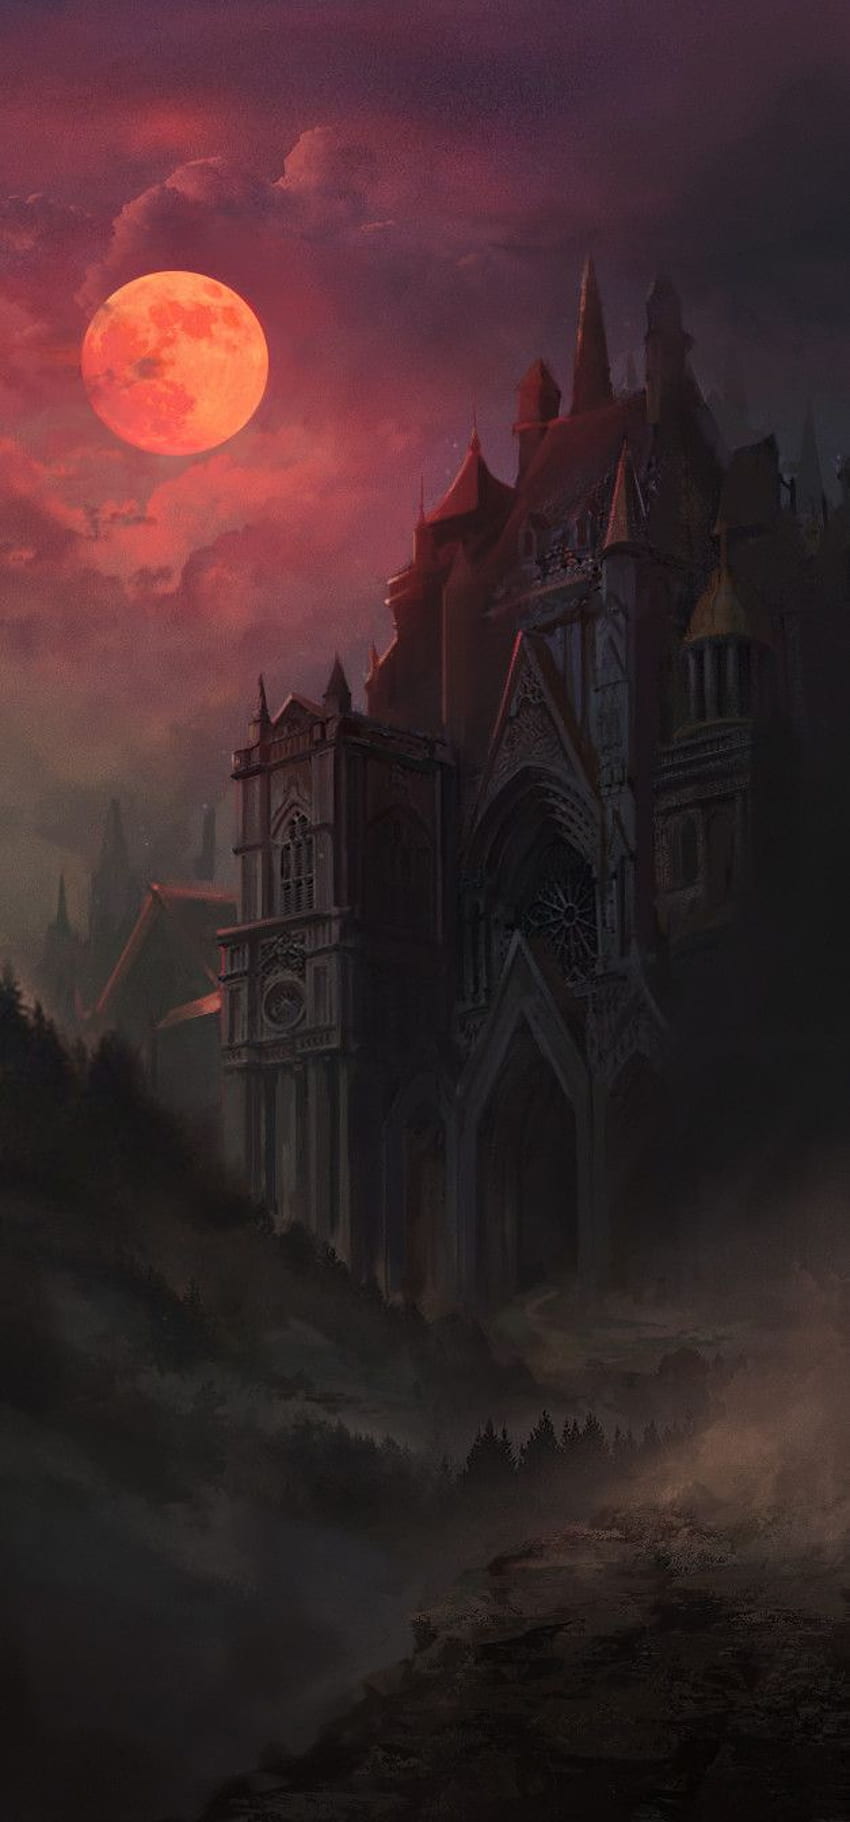 ArtStation - gotycki zamek, Lana Monada. Fantazyjny zamek, gotyk, gotycki zamek fantasy, ciemny zamek iPhone Tapeta na telefon HD